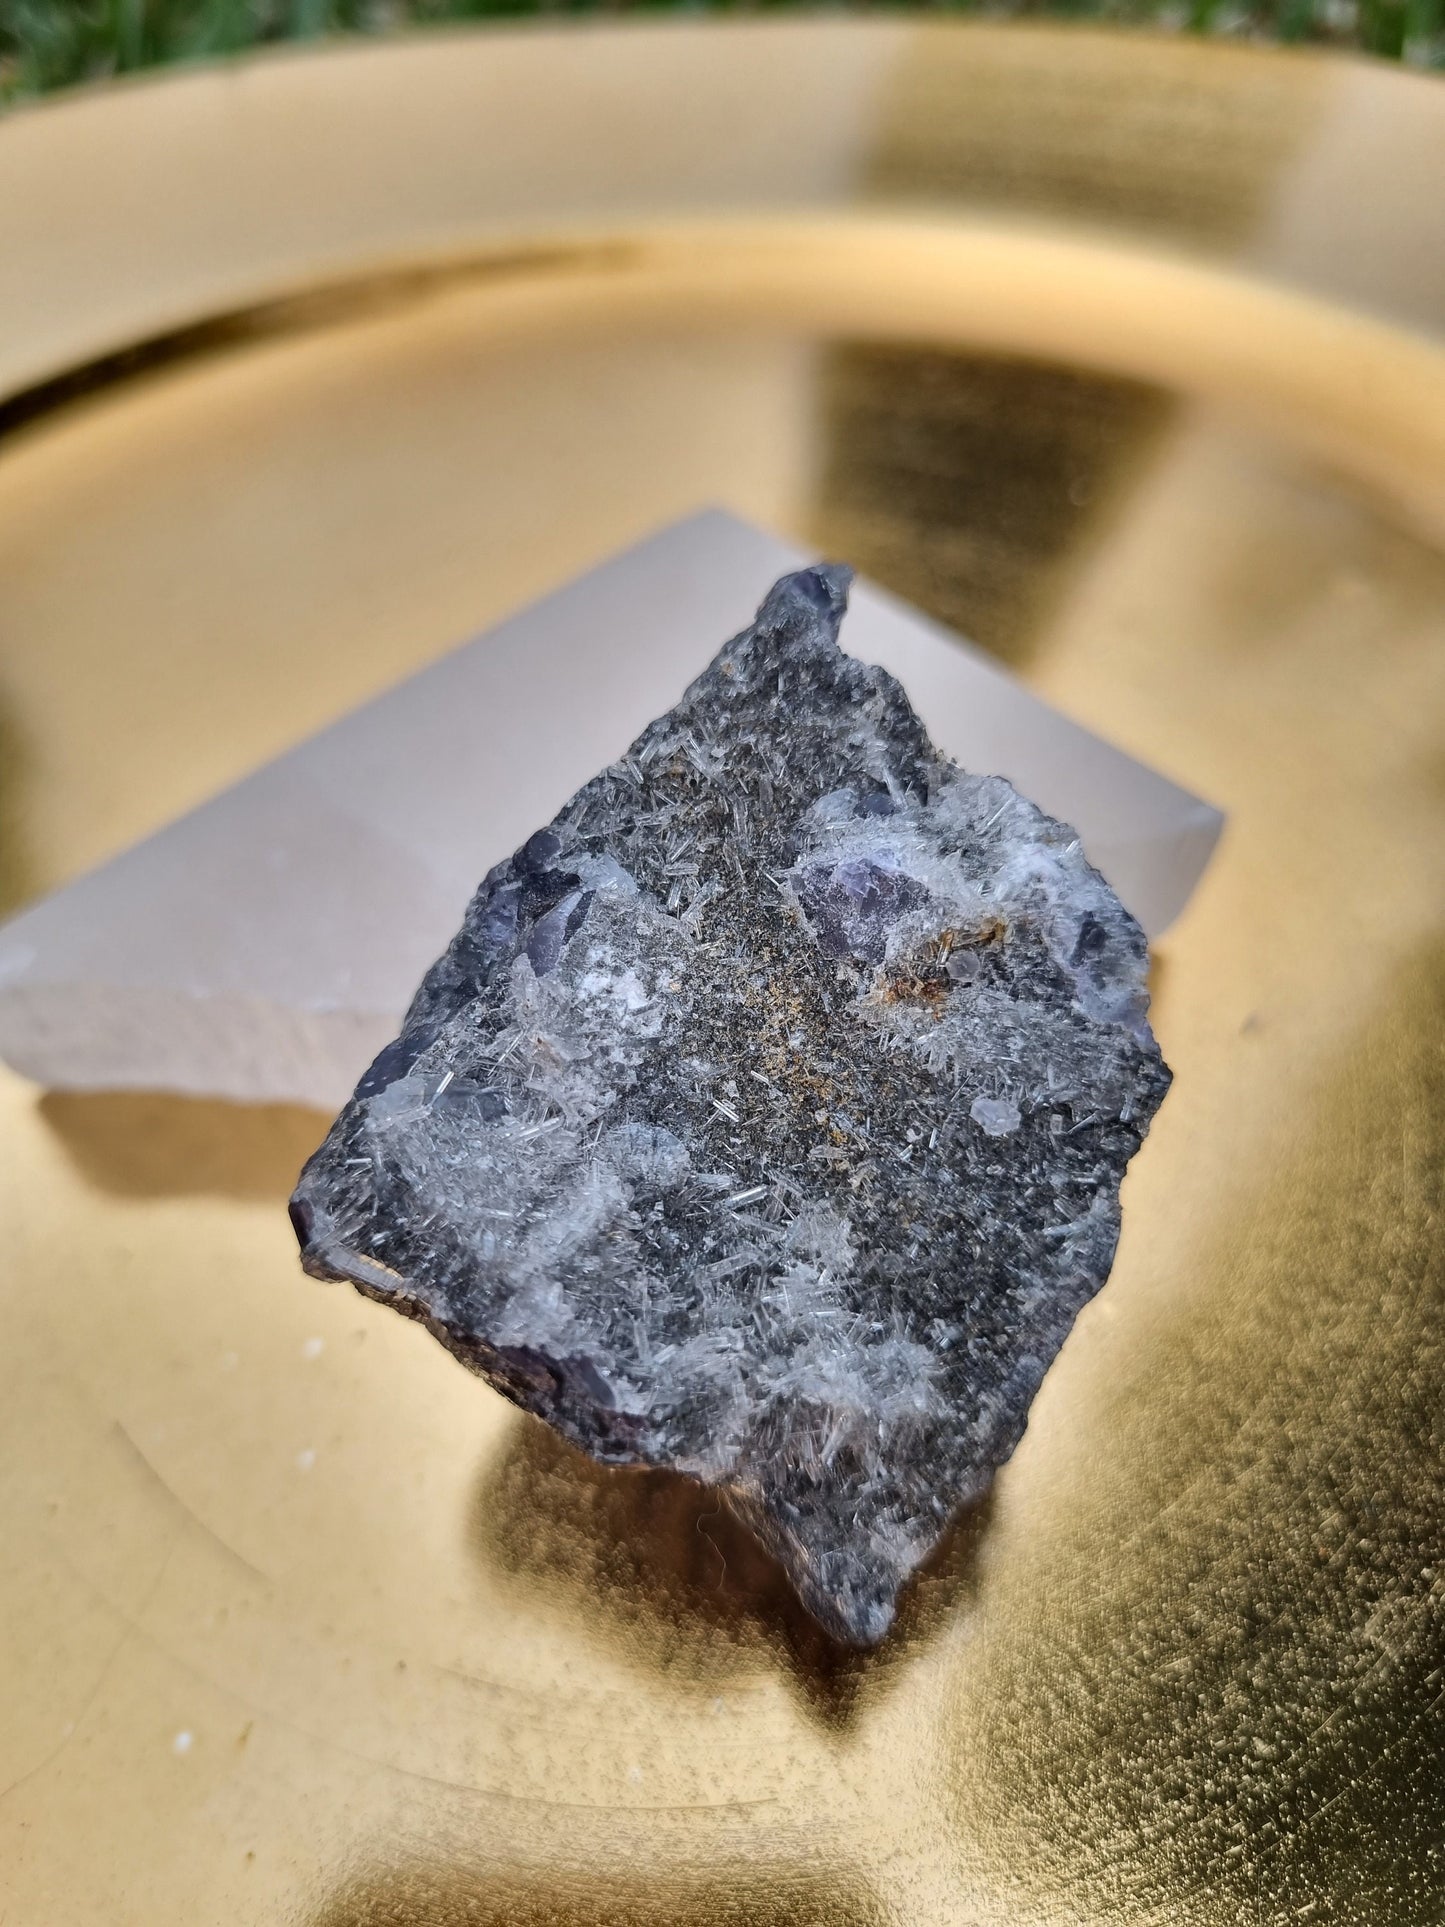 Tanzanite Fluorite Needle quartz 86g / Specimen